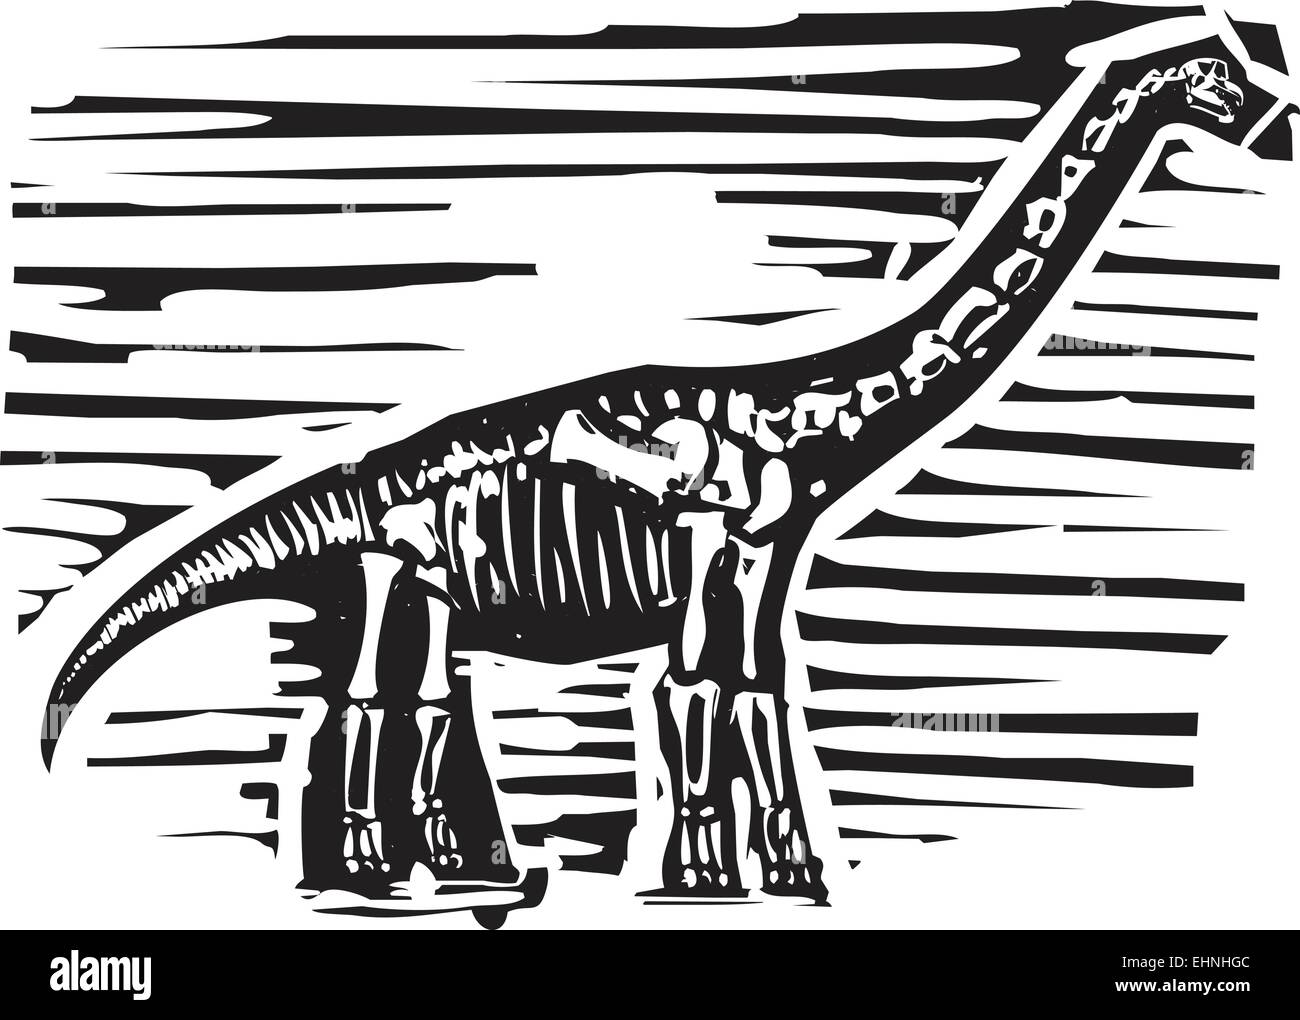 Xilografia immagine di stile di un fossile di un lungo collo o Apatosaurus brontosaurus dinosauro Illustrazione Vettoriale